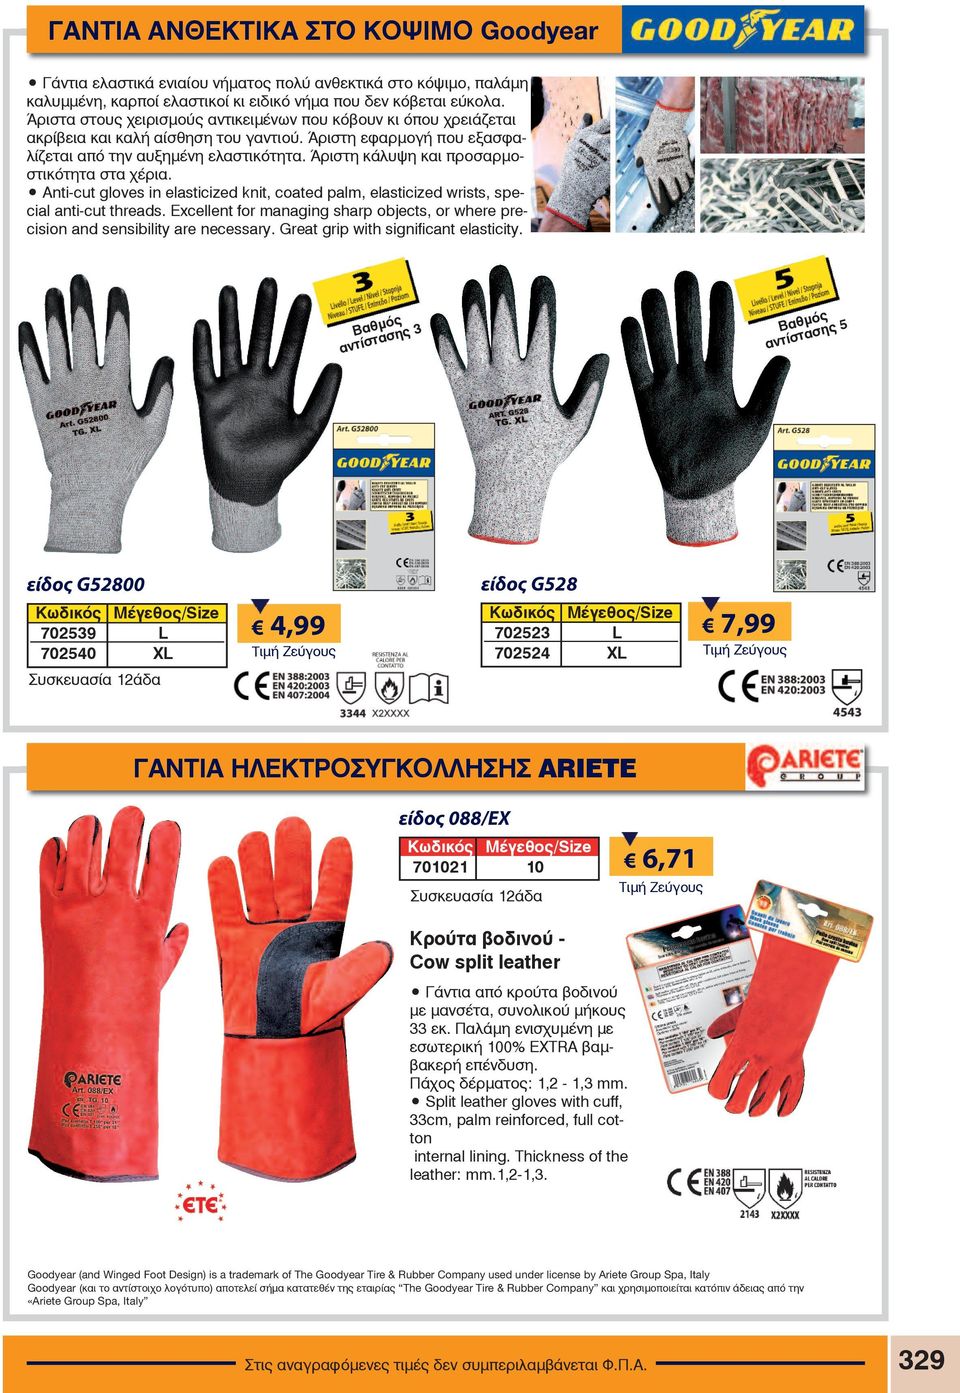 Άριστη κάλυψη και προσαρμοστικότητα στα χέρια. Anti-cut gloves in elasticized knit, coated palm, elasticized wrists, special anti-cut threads.